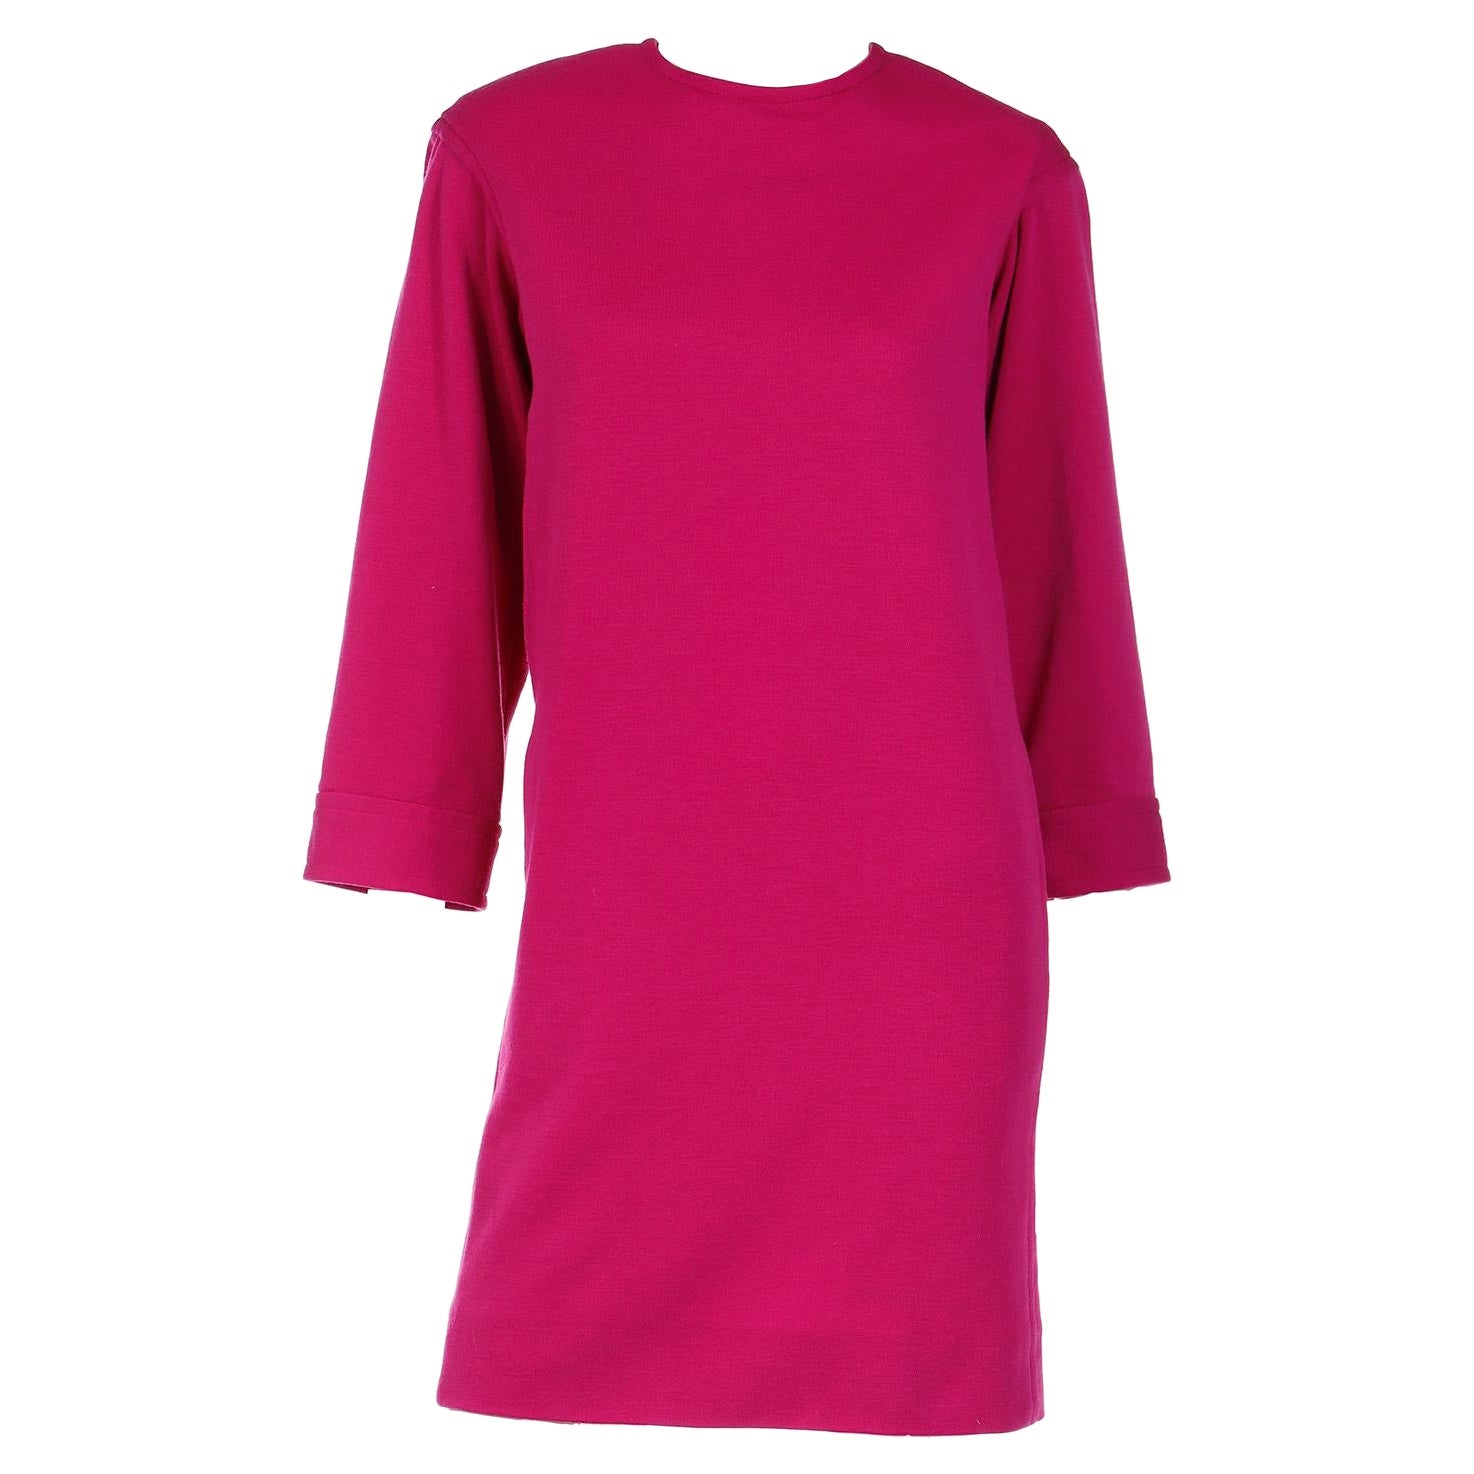 S/S 1990 Vintage Yves Saint Laurent Magenta Pink Wool Shift Dress For Sale